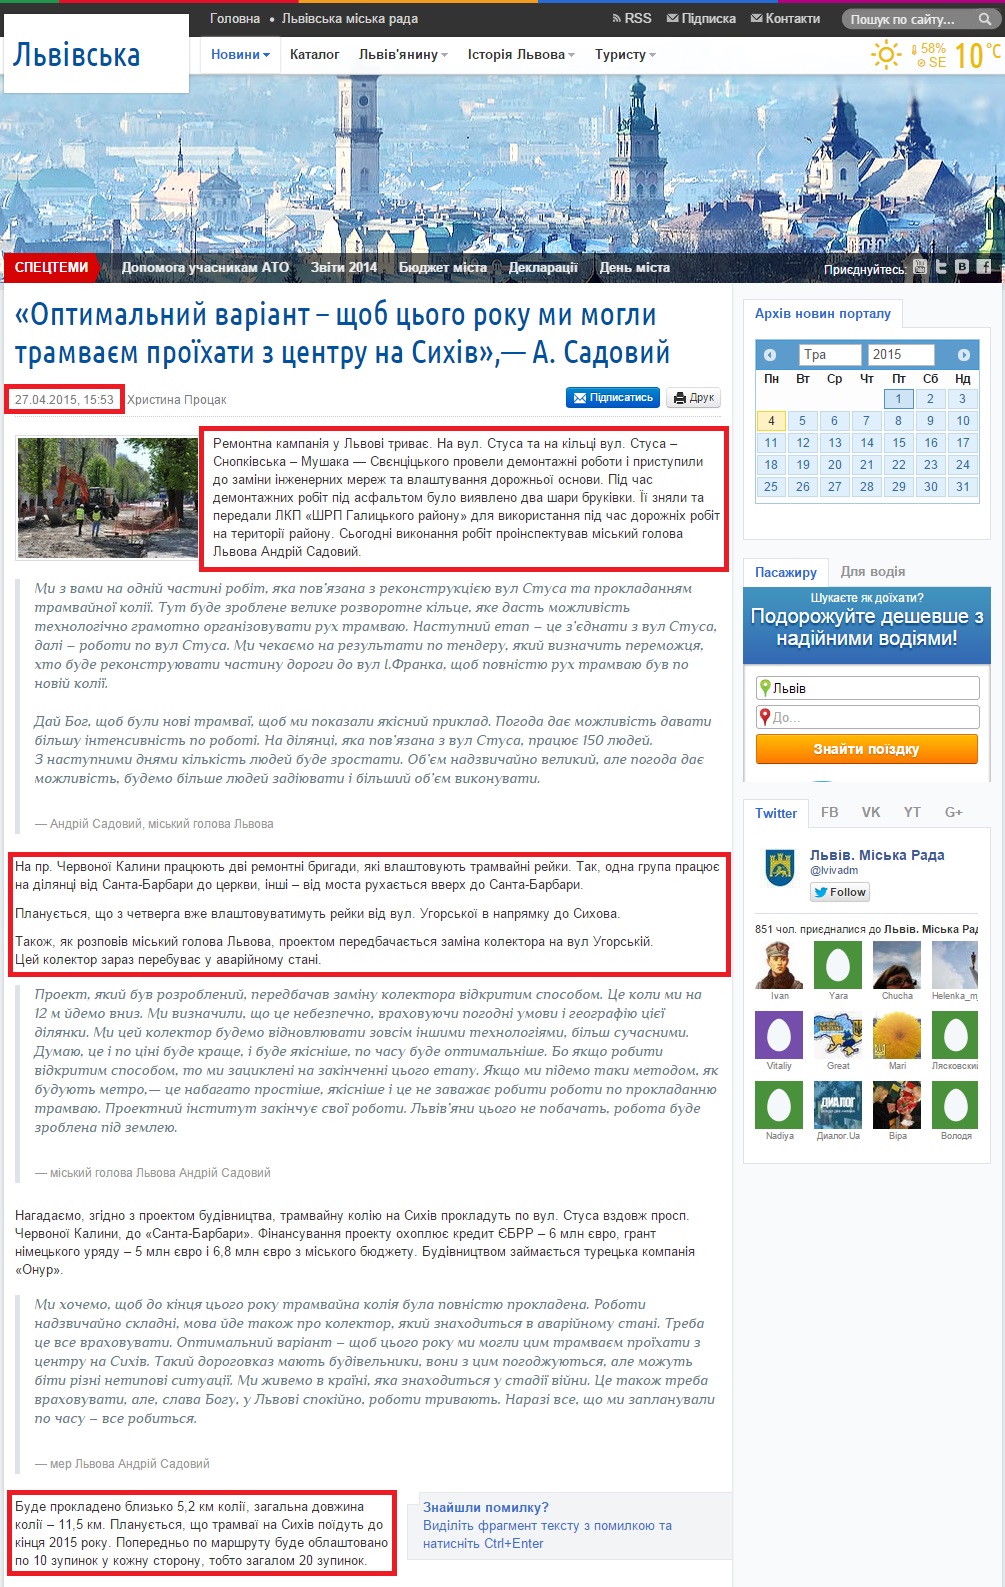 http://city-adm.lviv.ua/portal-news/society/transport/224524-optymalnyi-variant-shchob-tsoho-roku-my-mohly-tramvaiem-proikhaty-z-tsentru-na-sykhiv-a-sadovyi